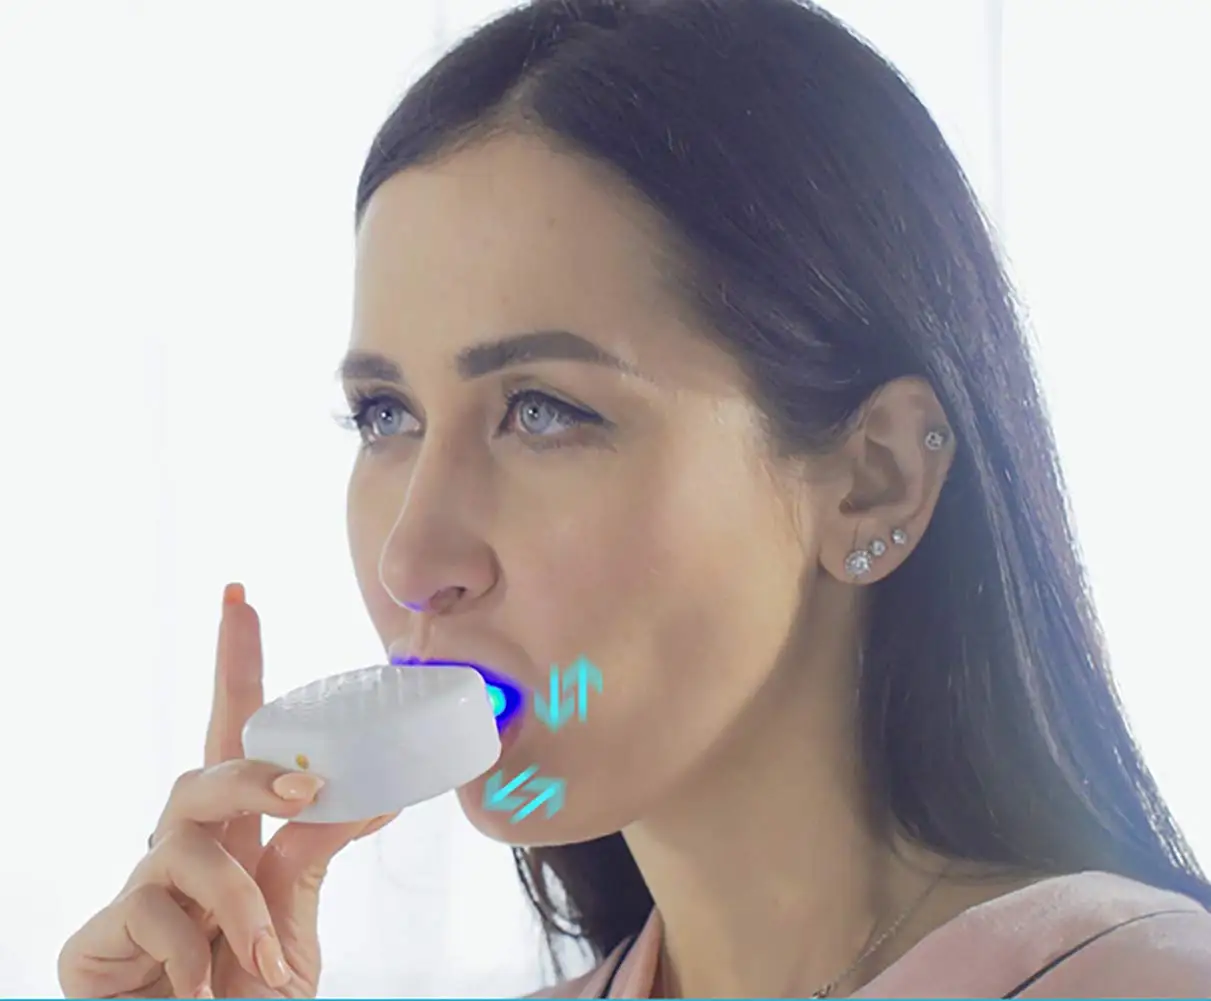 U-образная автоматическая звуковая электрическая зубная щетка, usb зарядка, IPX7, водонепроницаемая, интеллектуальная, 4 режима, зубная щетка, уход за полостью рта, отбеливание зубов